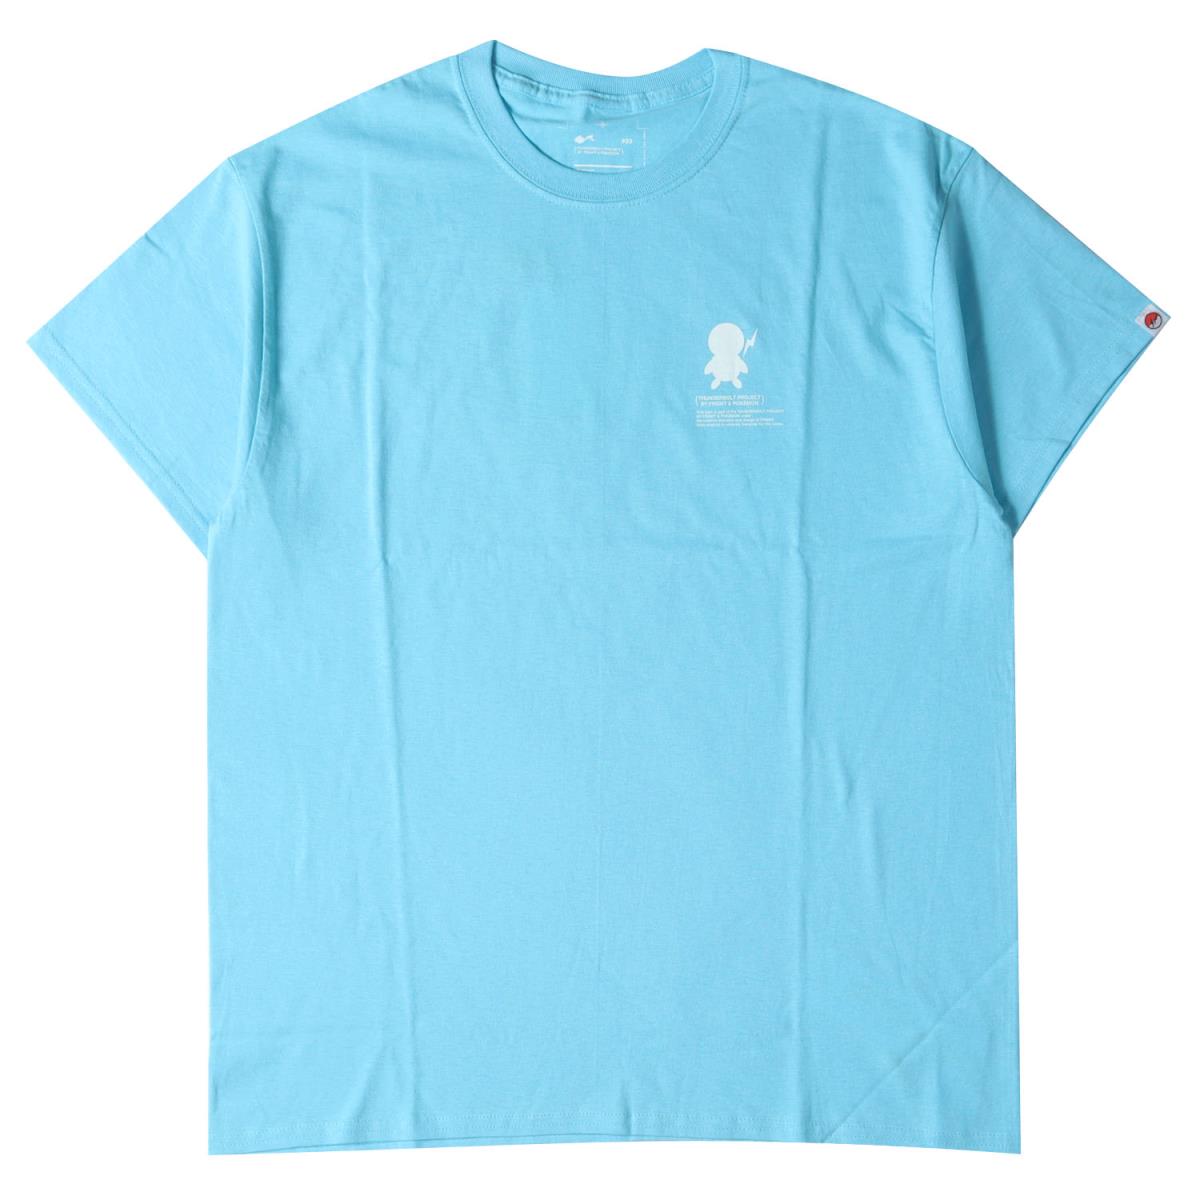 トップス, Tシャツ・カットソー fragment THUNDERBOLT PROJECT T 21SS 03(L) K3372